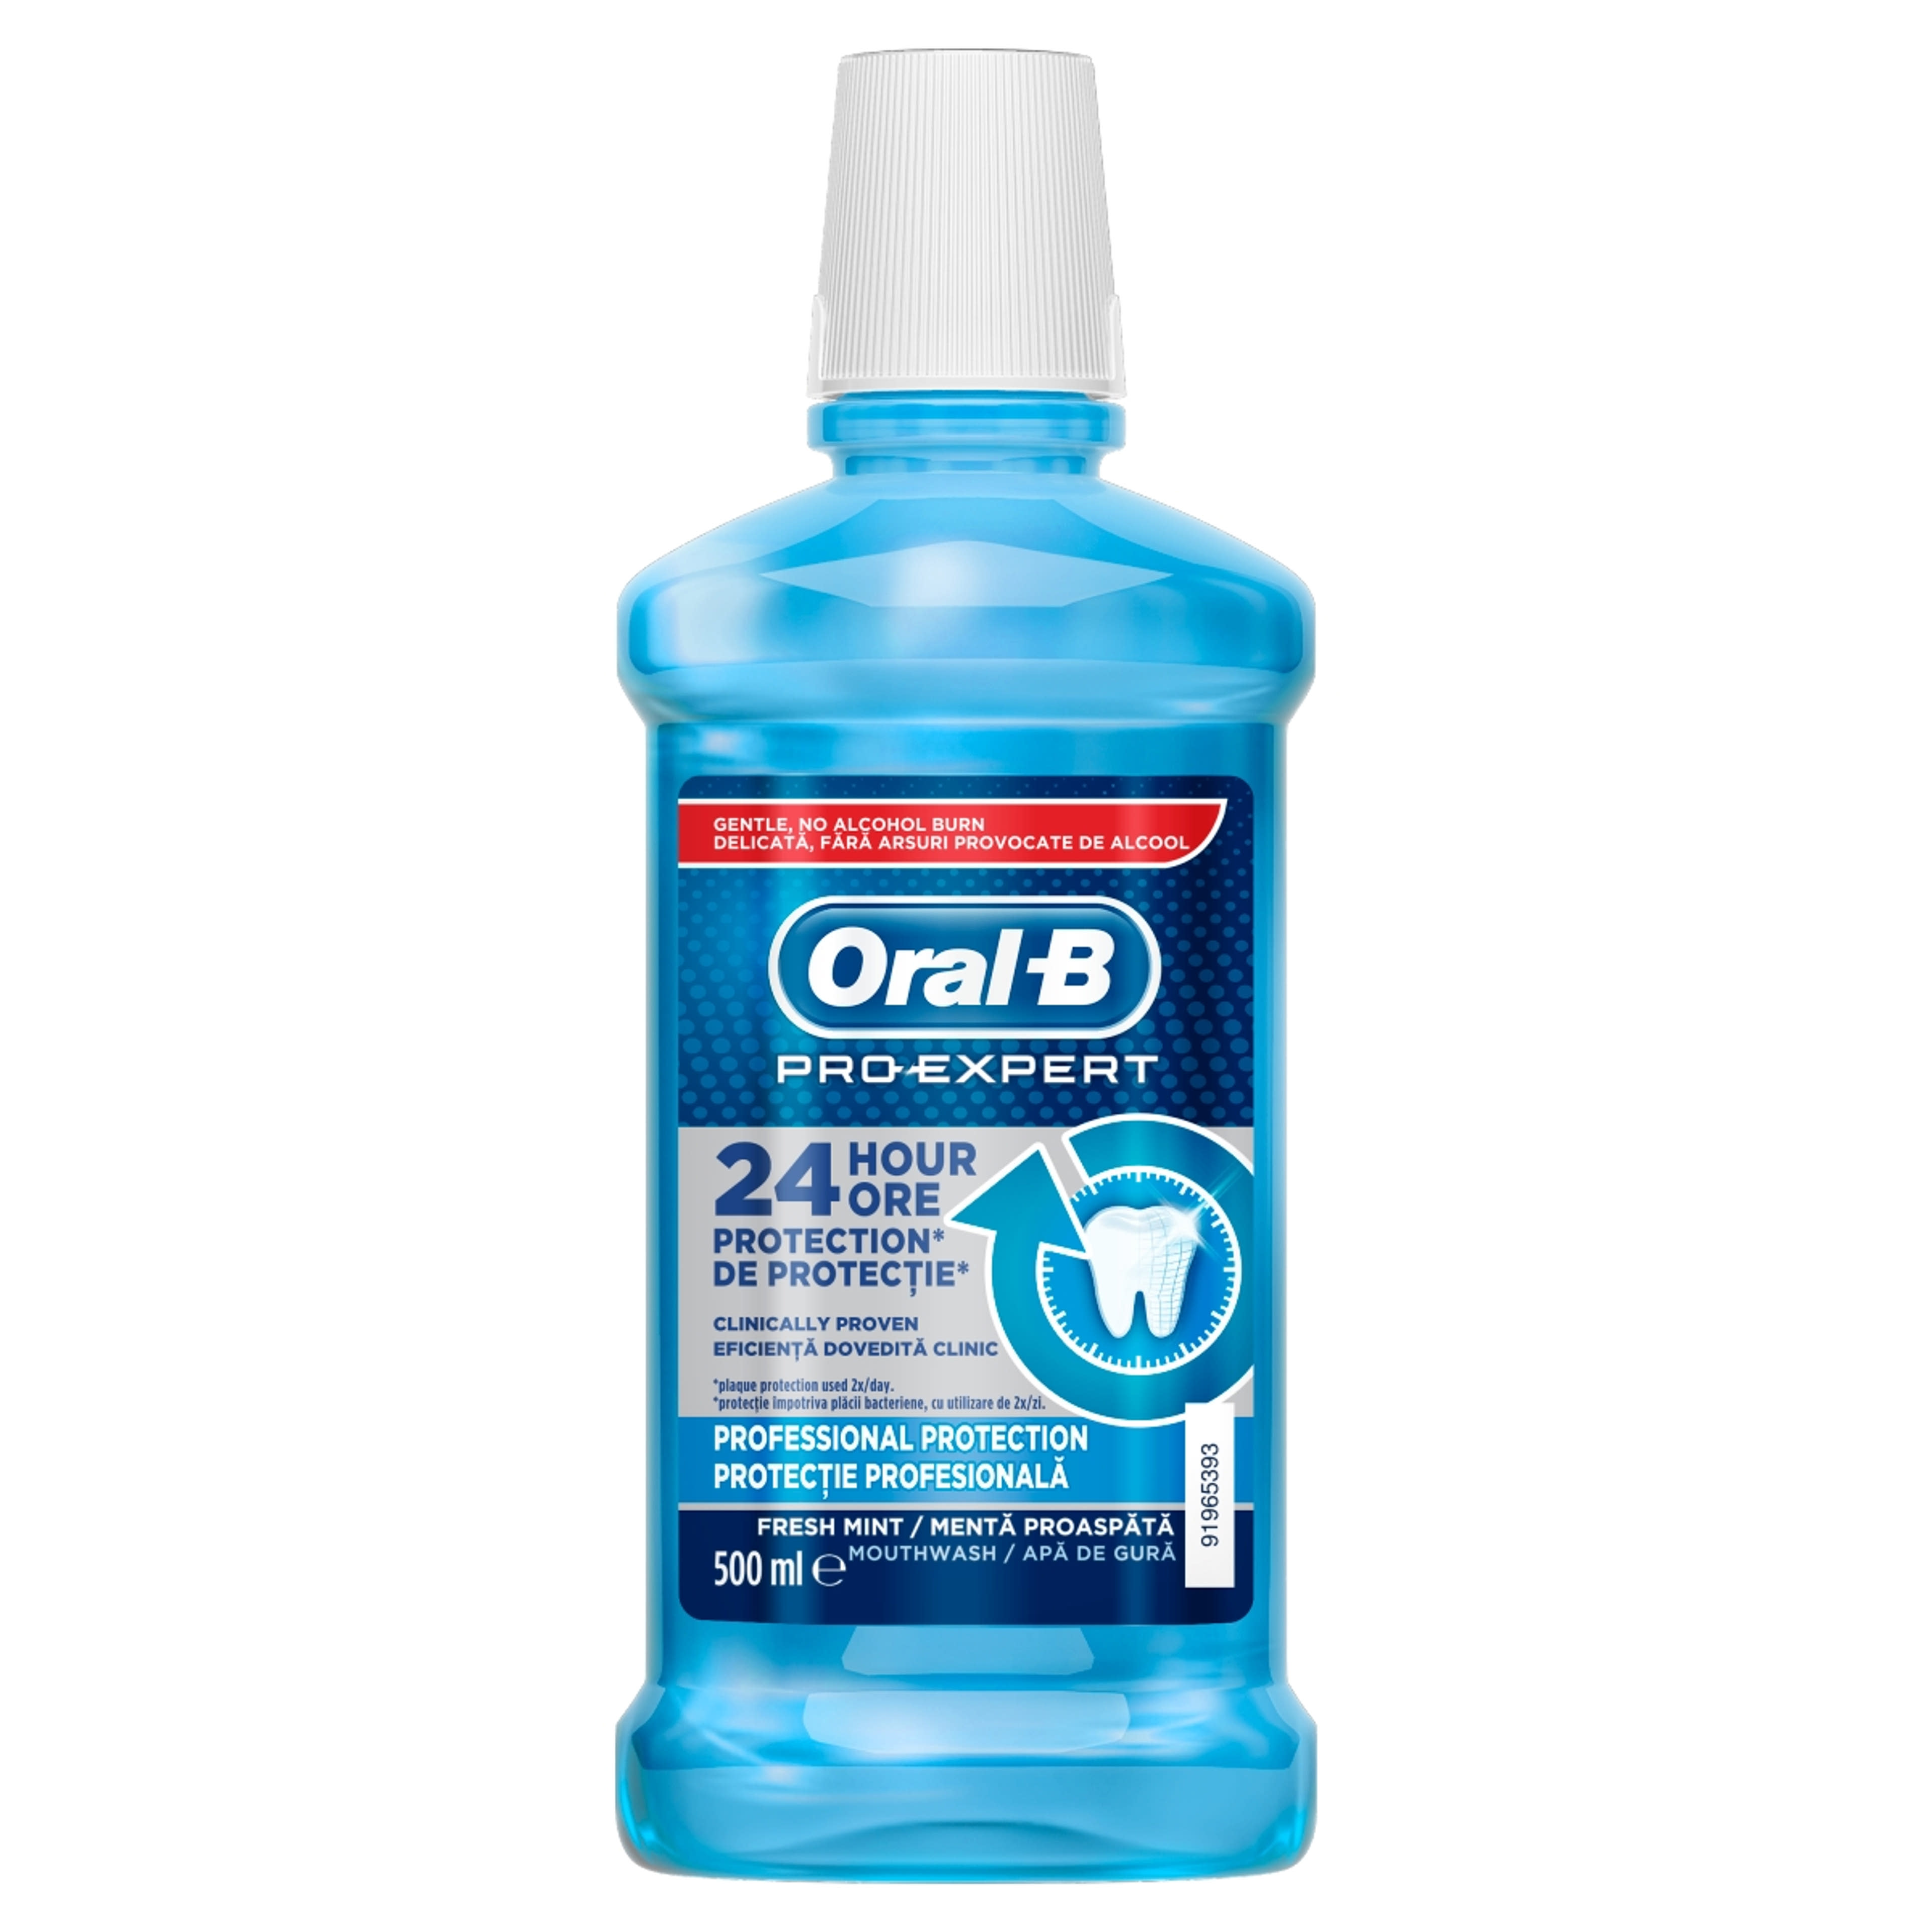 Oral-B Pro-Expert Professional Protection szájvíz - 500 ml